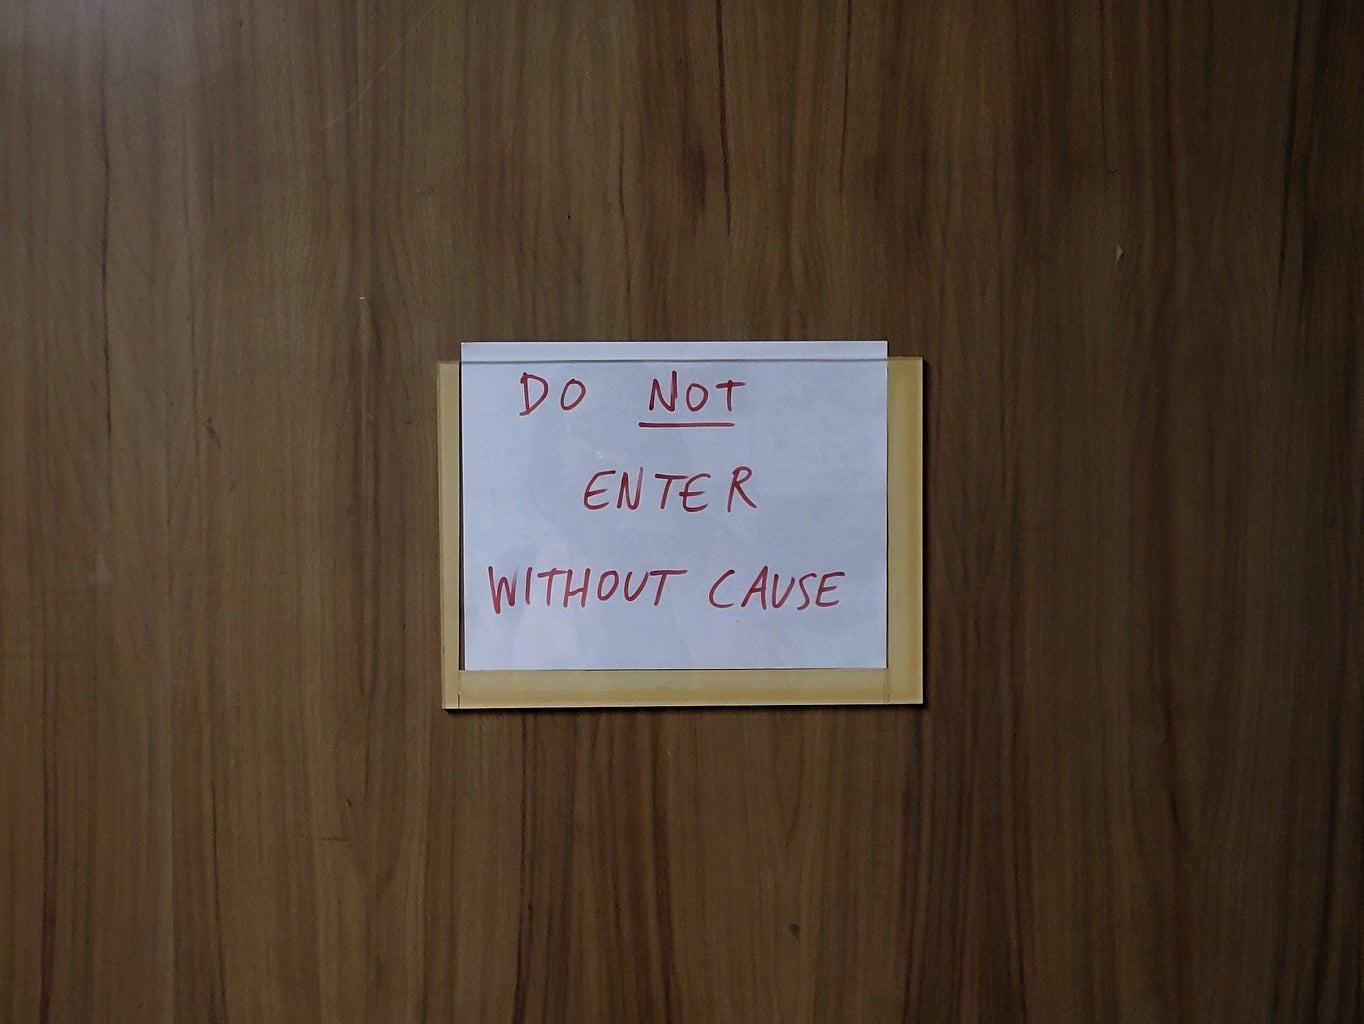 notice on door